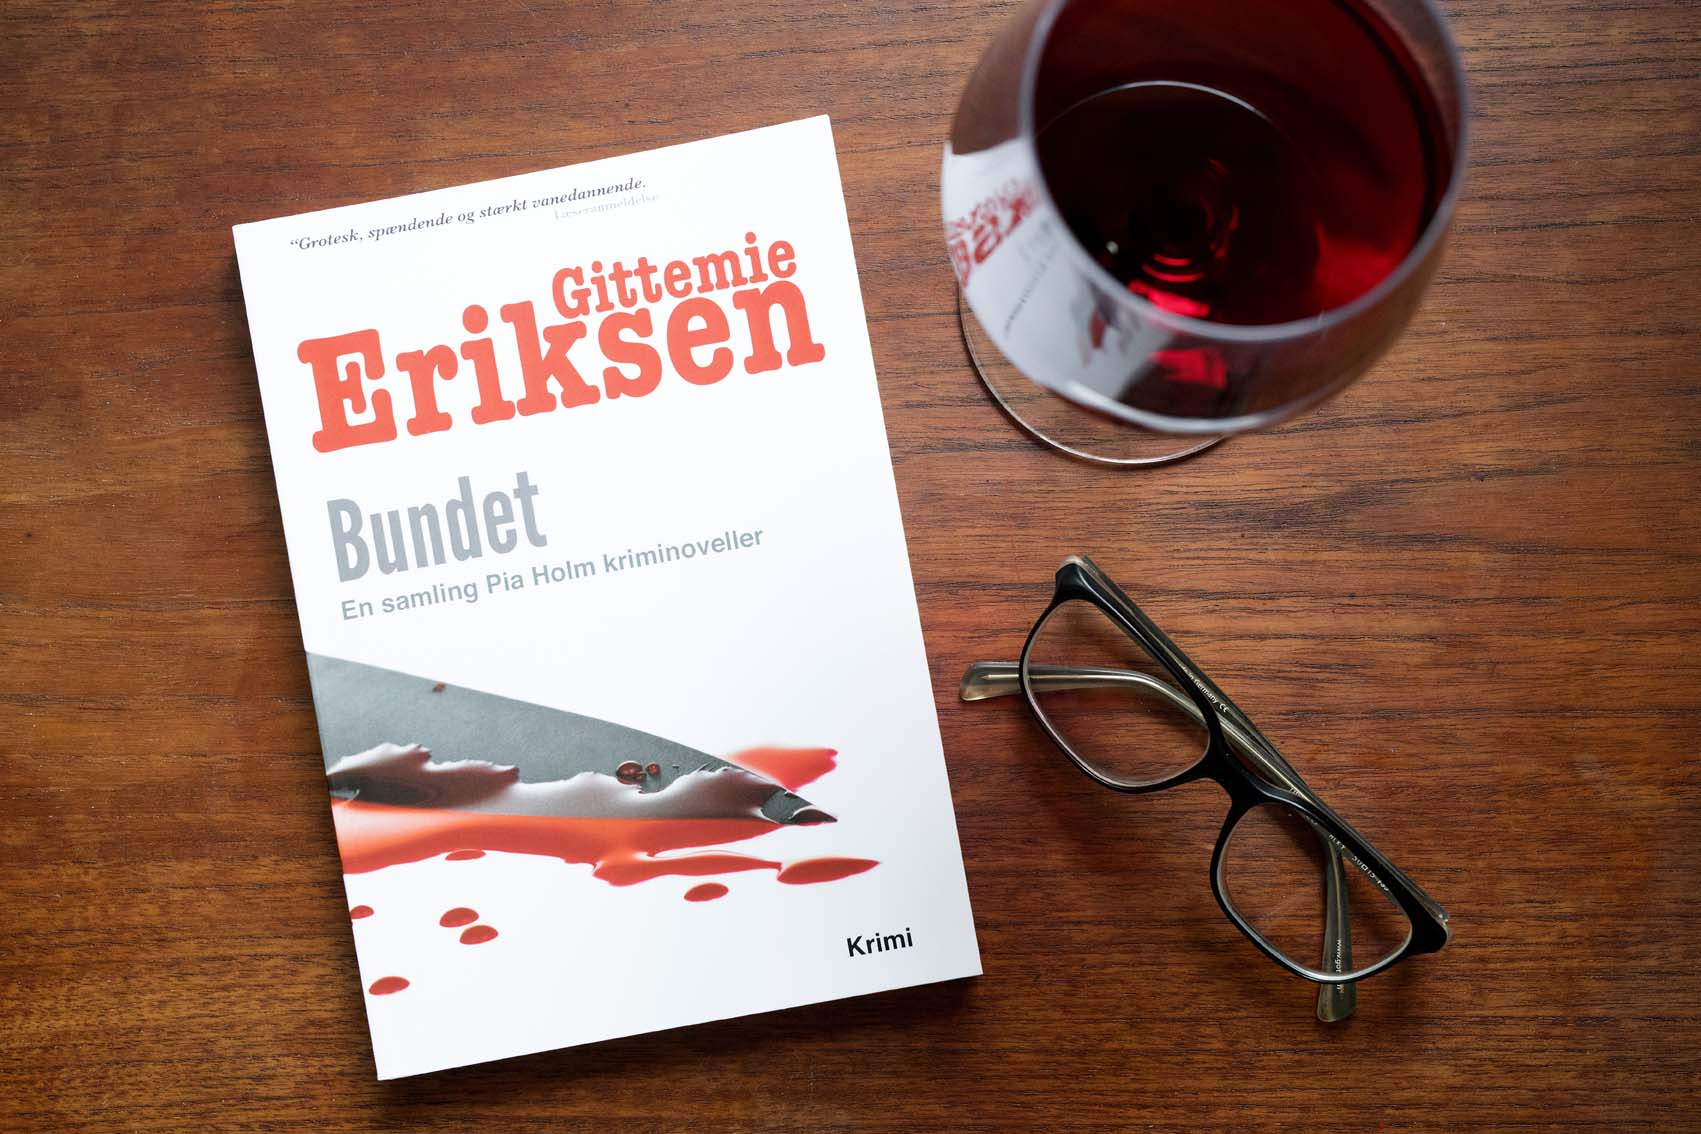 Krimien-Bundet-af-BoD-forfatter-Gittemie-Eriksen